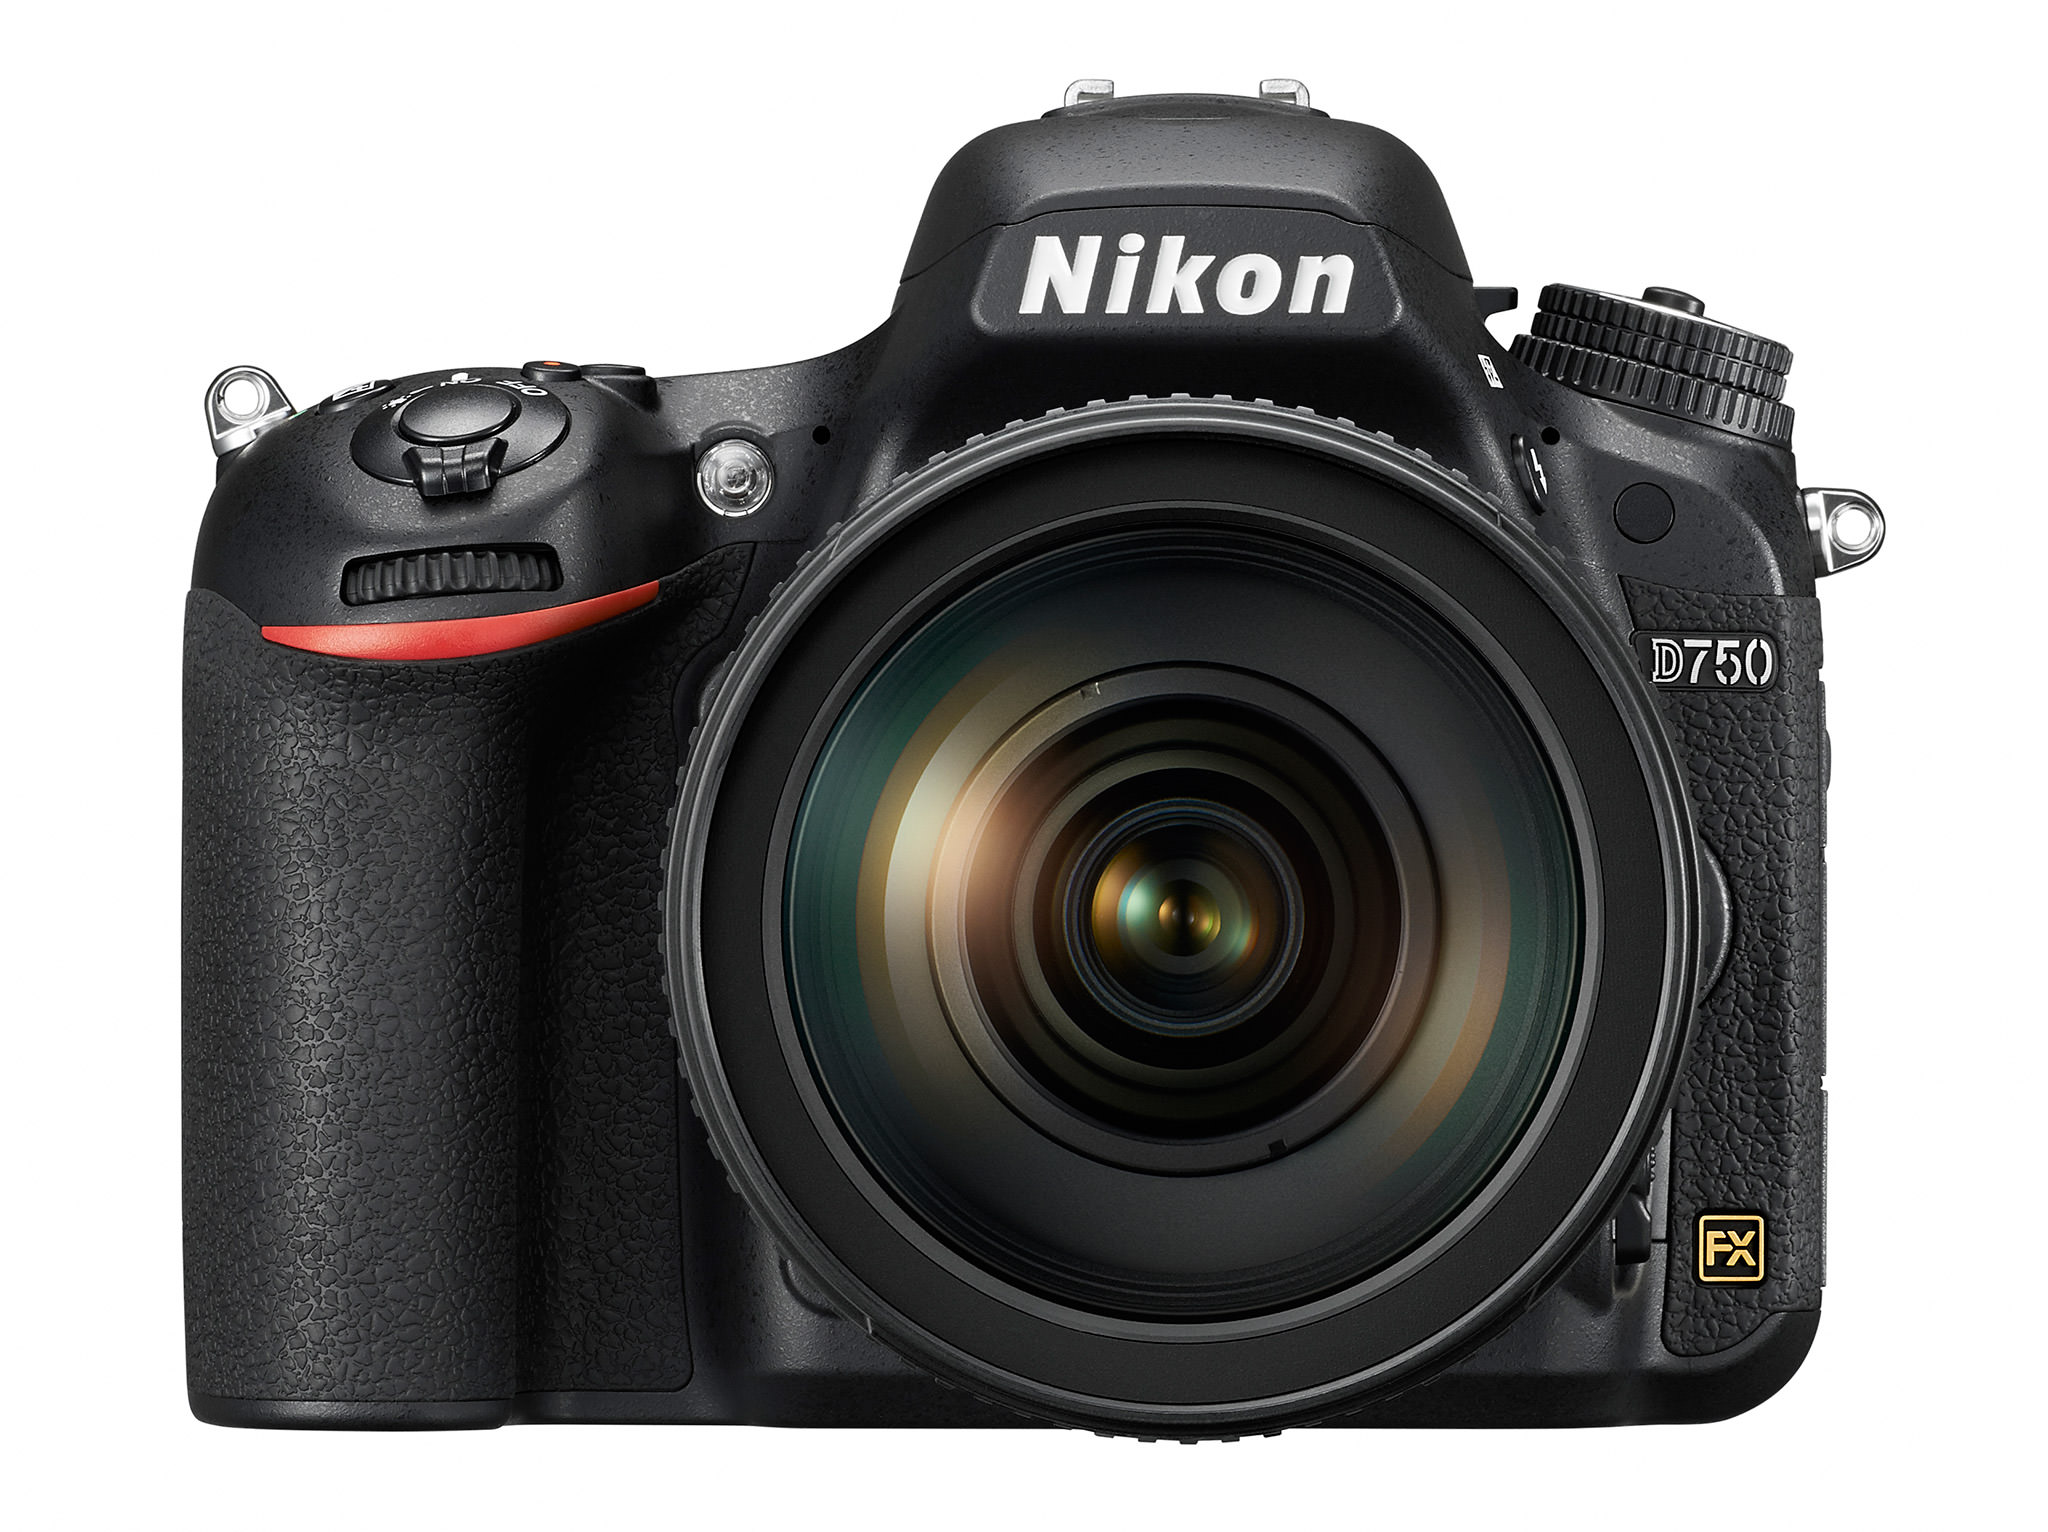 Nikon D750: Video Features Review 